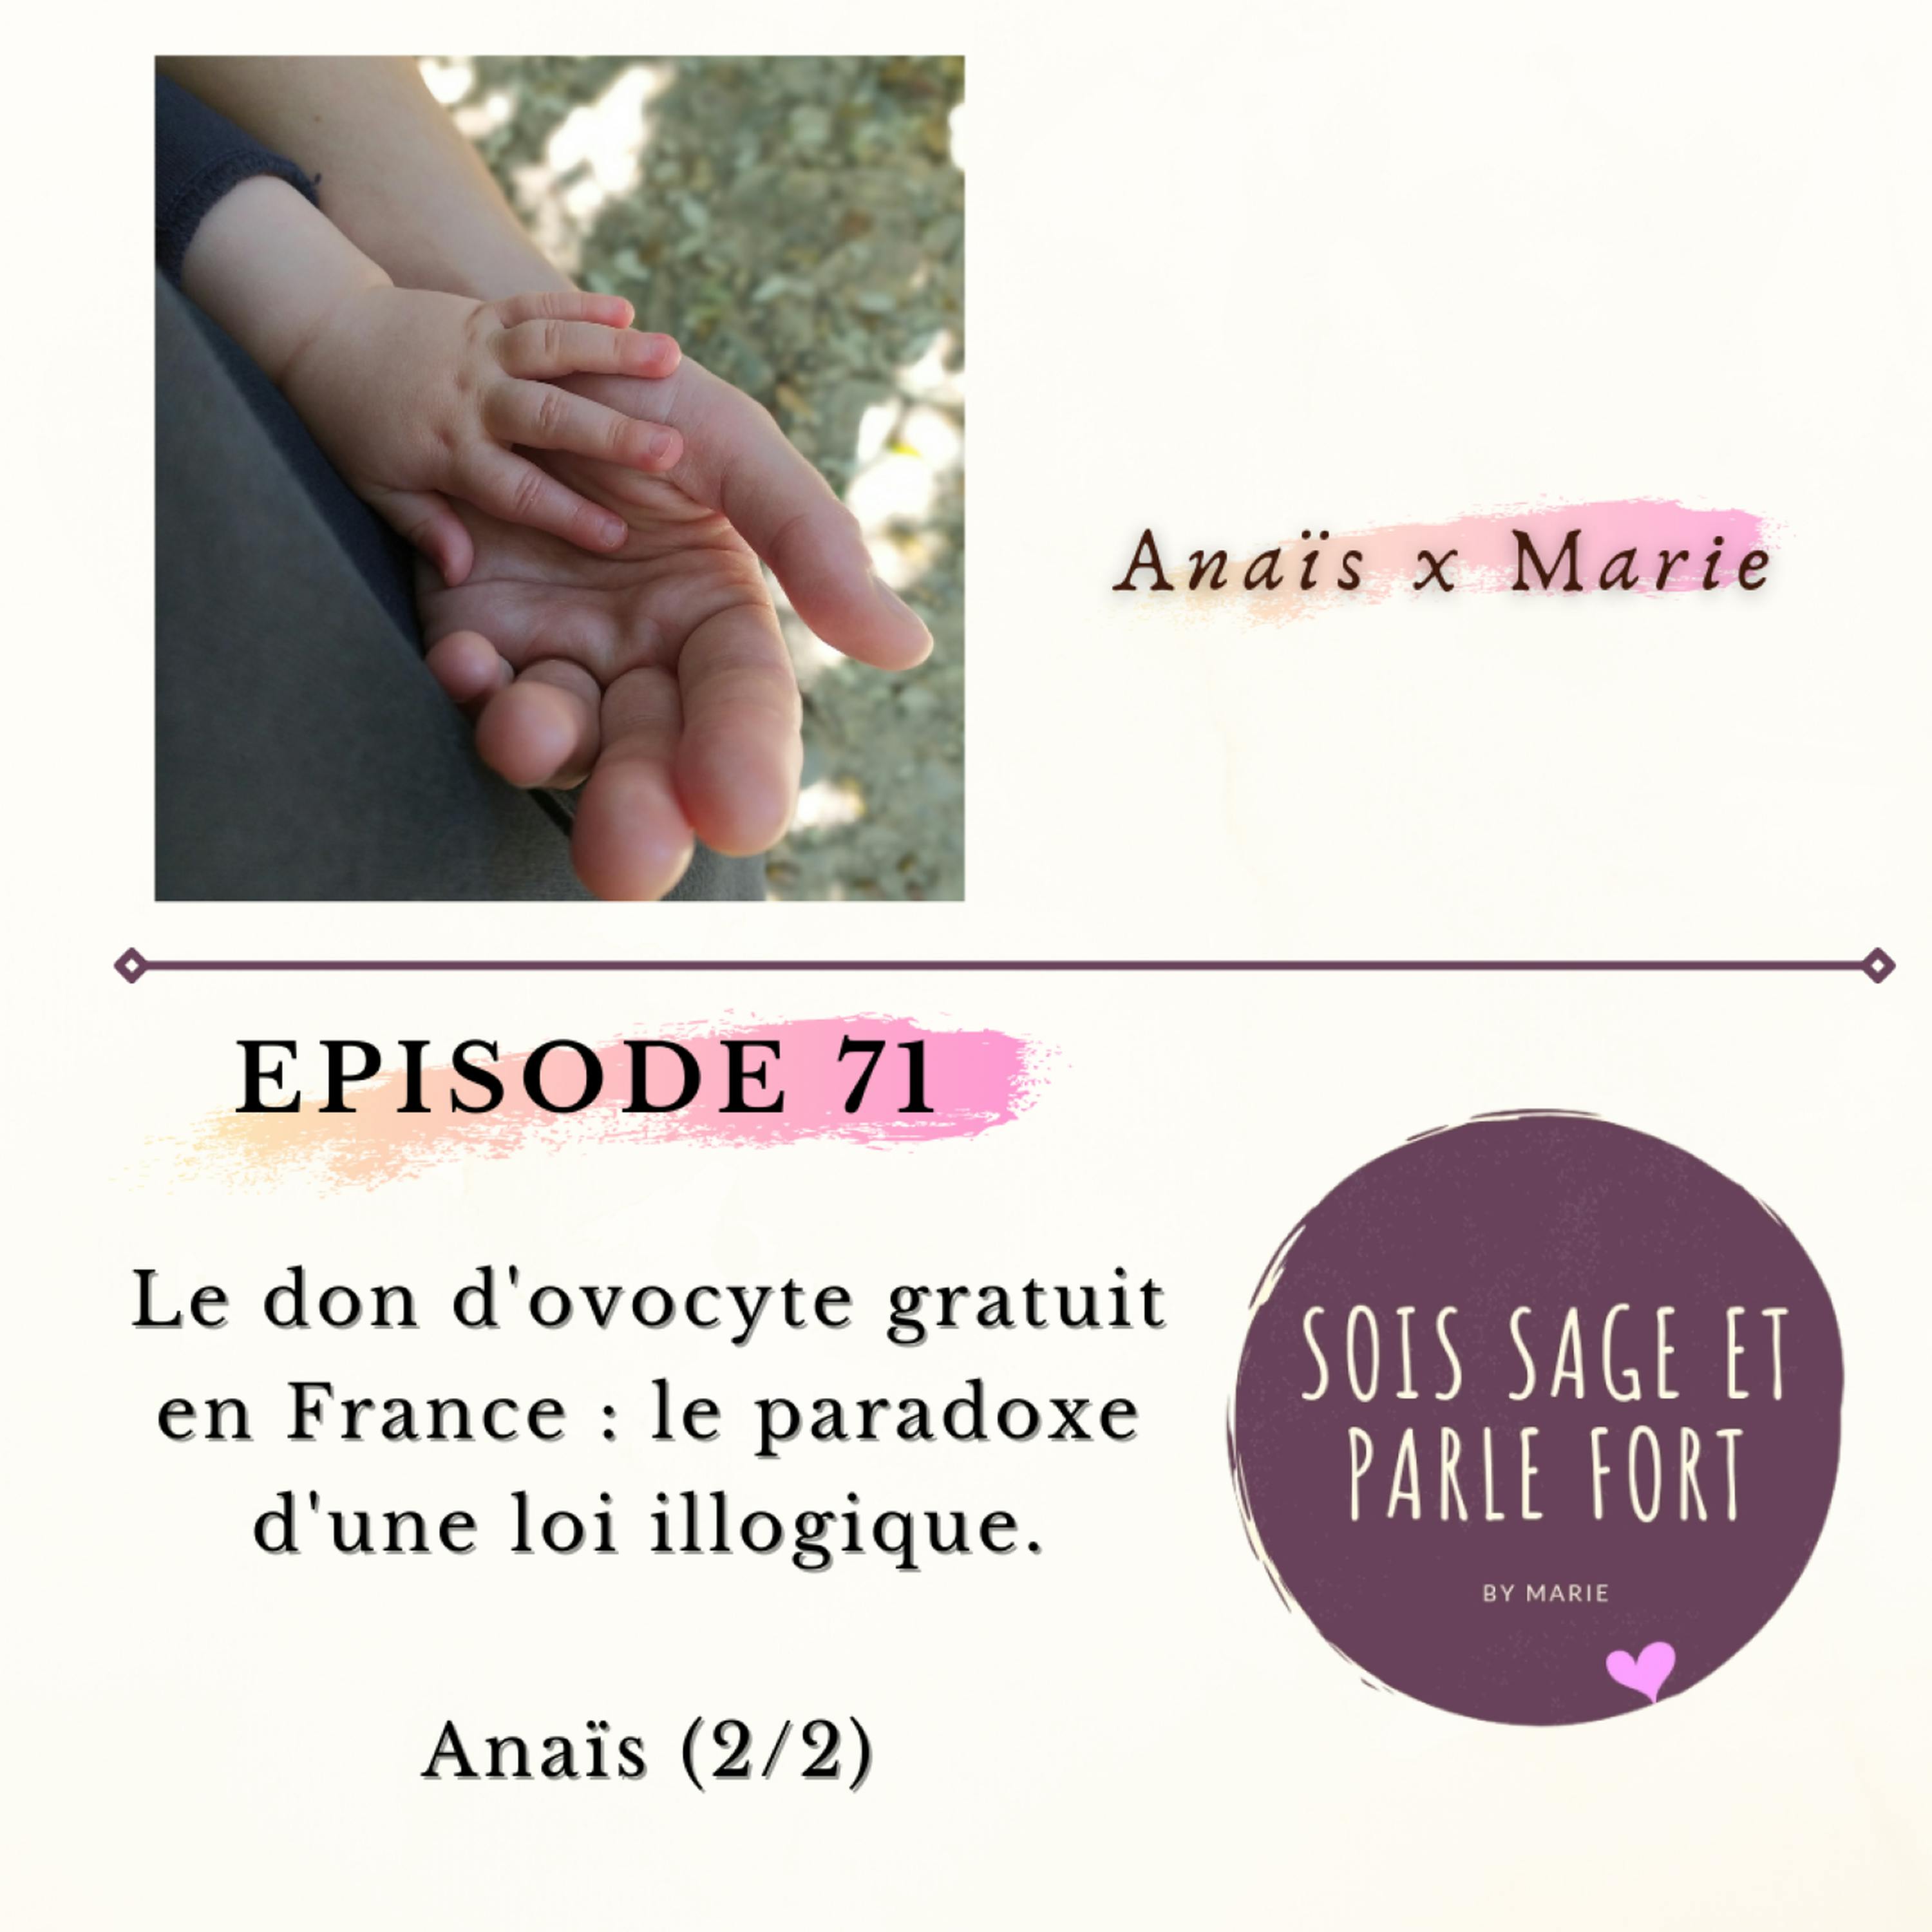 Le don d'ovocyte gratuit en France, paradoxe d'une loi illogique, avec Anaïs (2/2)